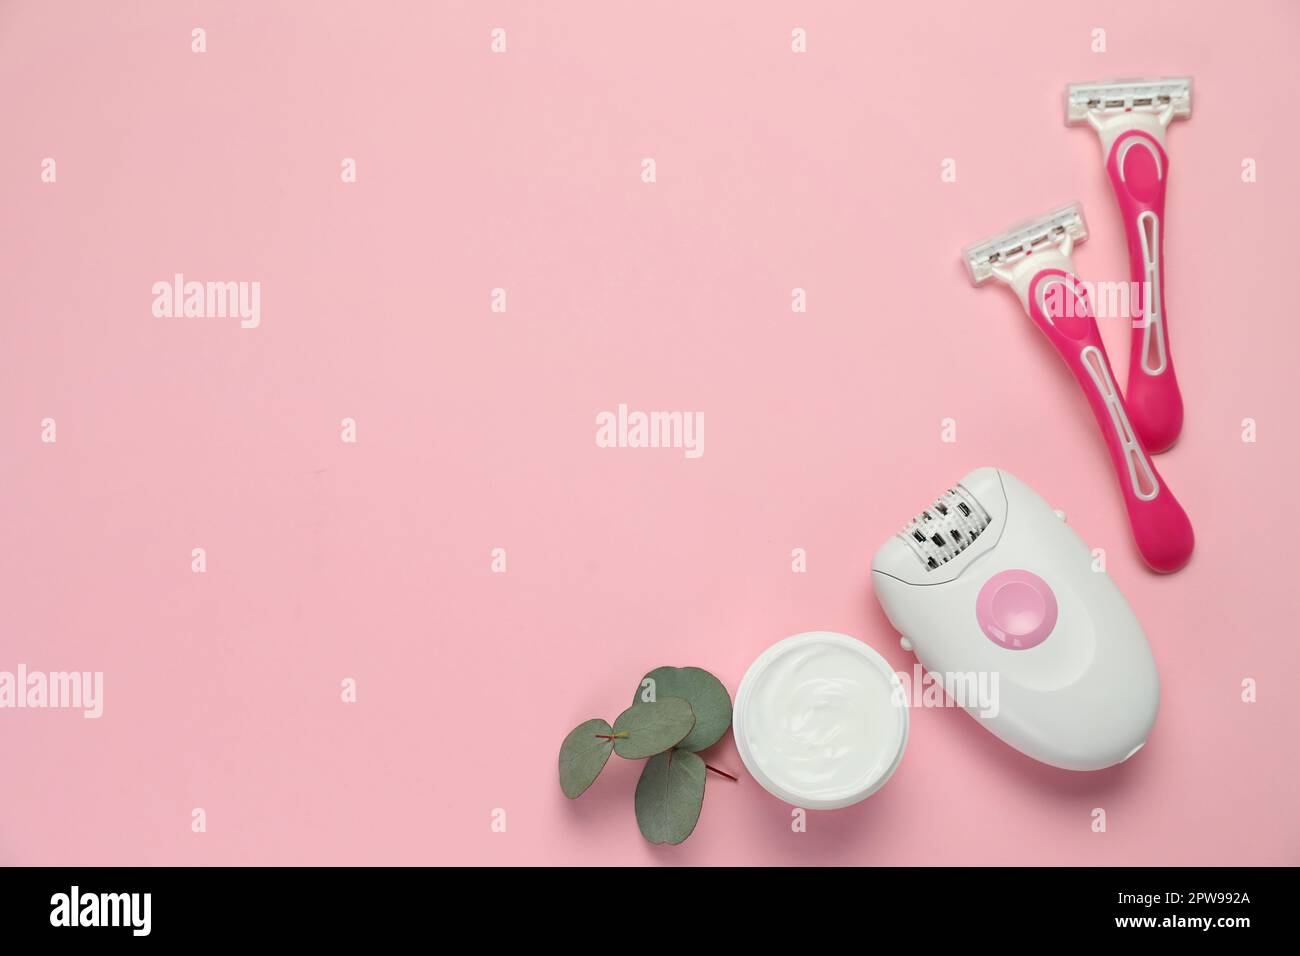 Moderner Epilierer, Rasierer, Creme und Eukalyptuszweig auf pinkfarbenem Hintergrund, flach liegend. Platz für Text Stockfoto